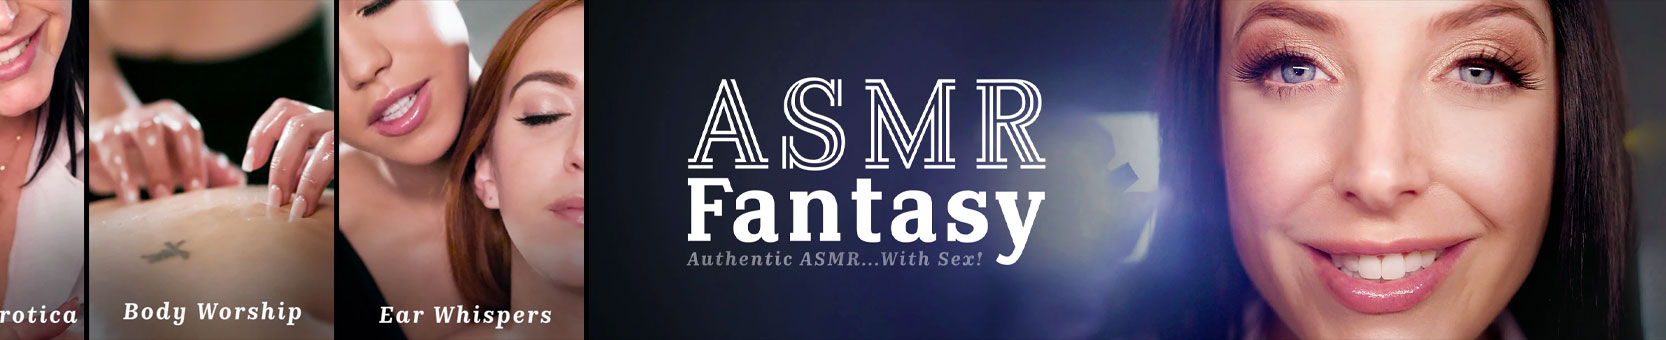 Video gratis di ASMR Fantasy